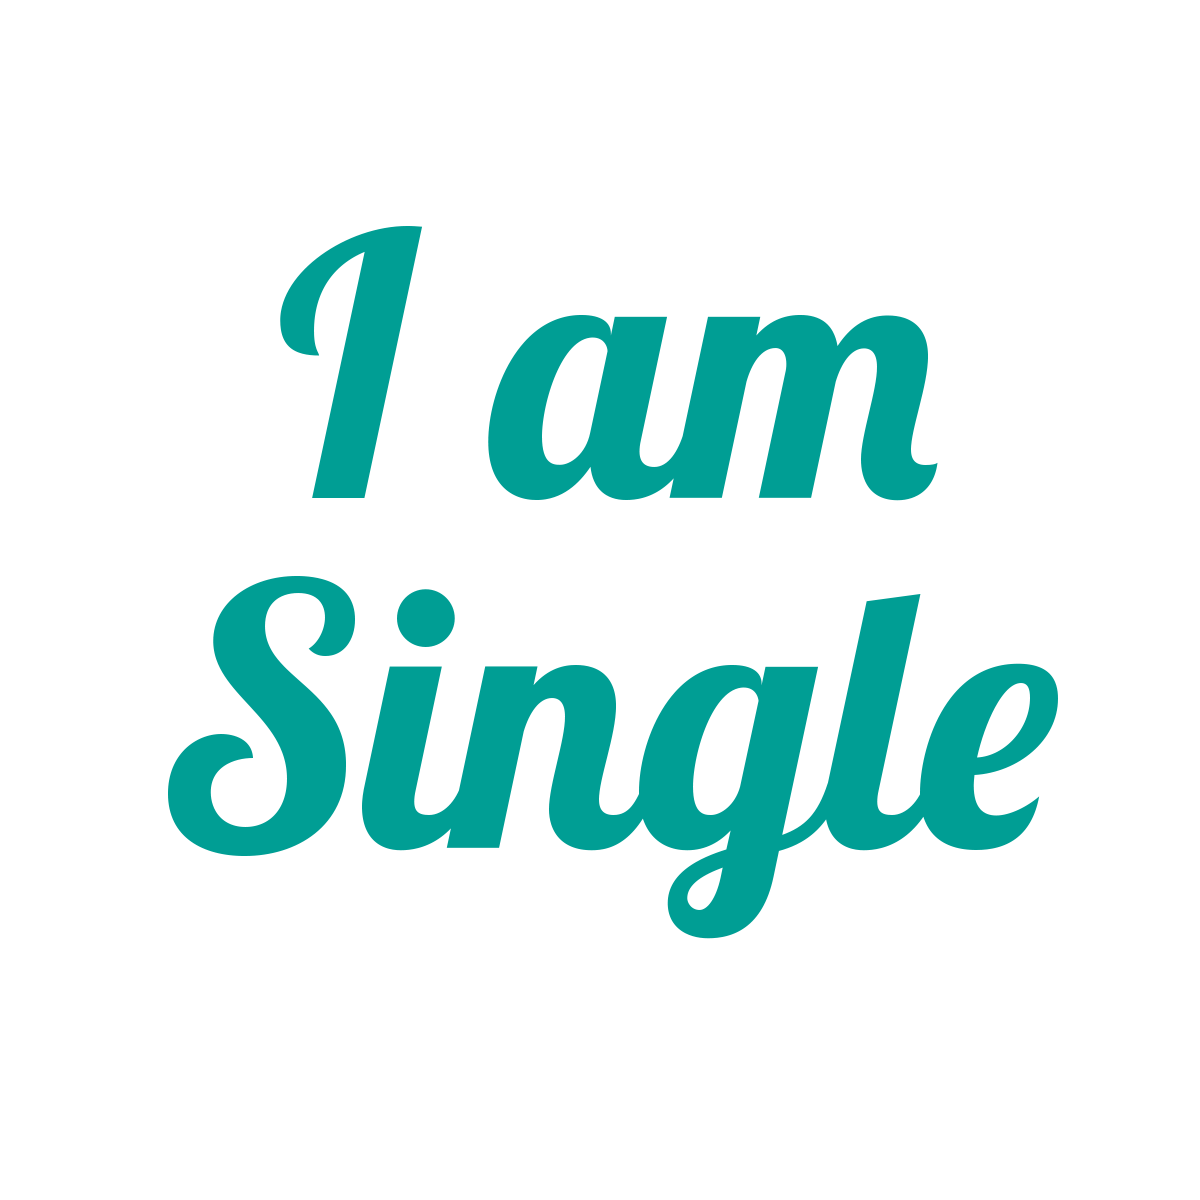 Single i am 6 Women